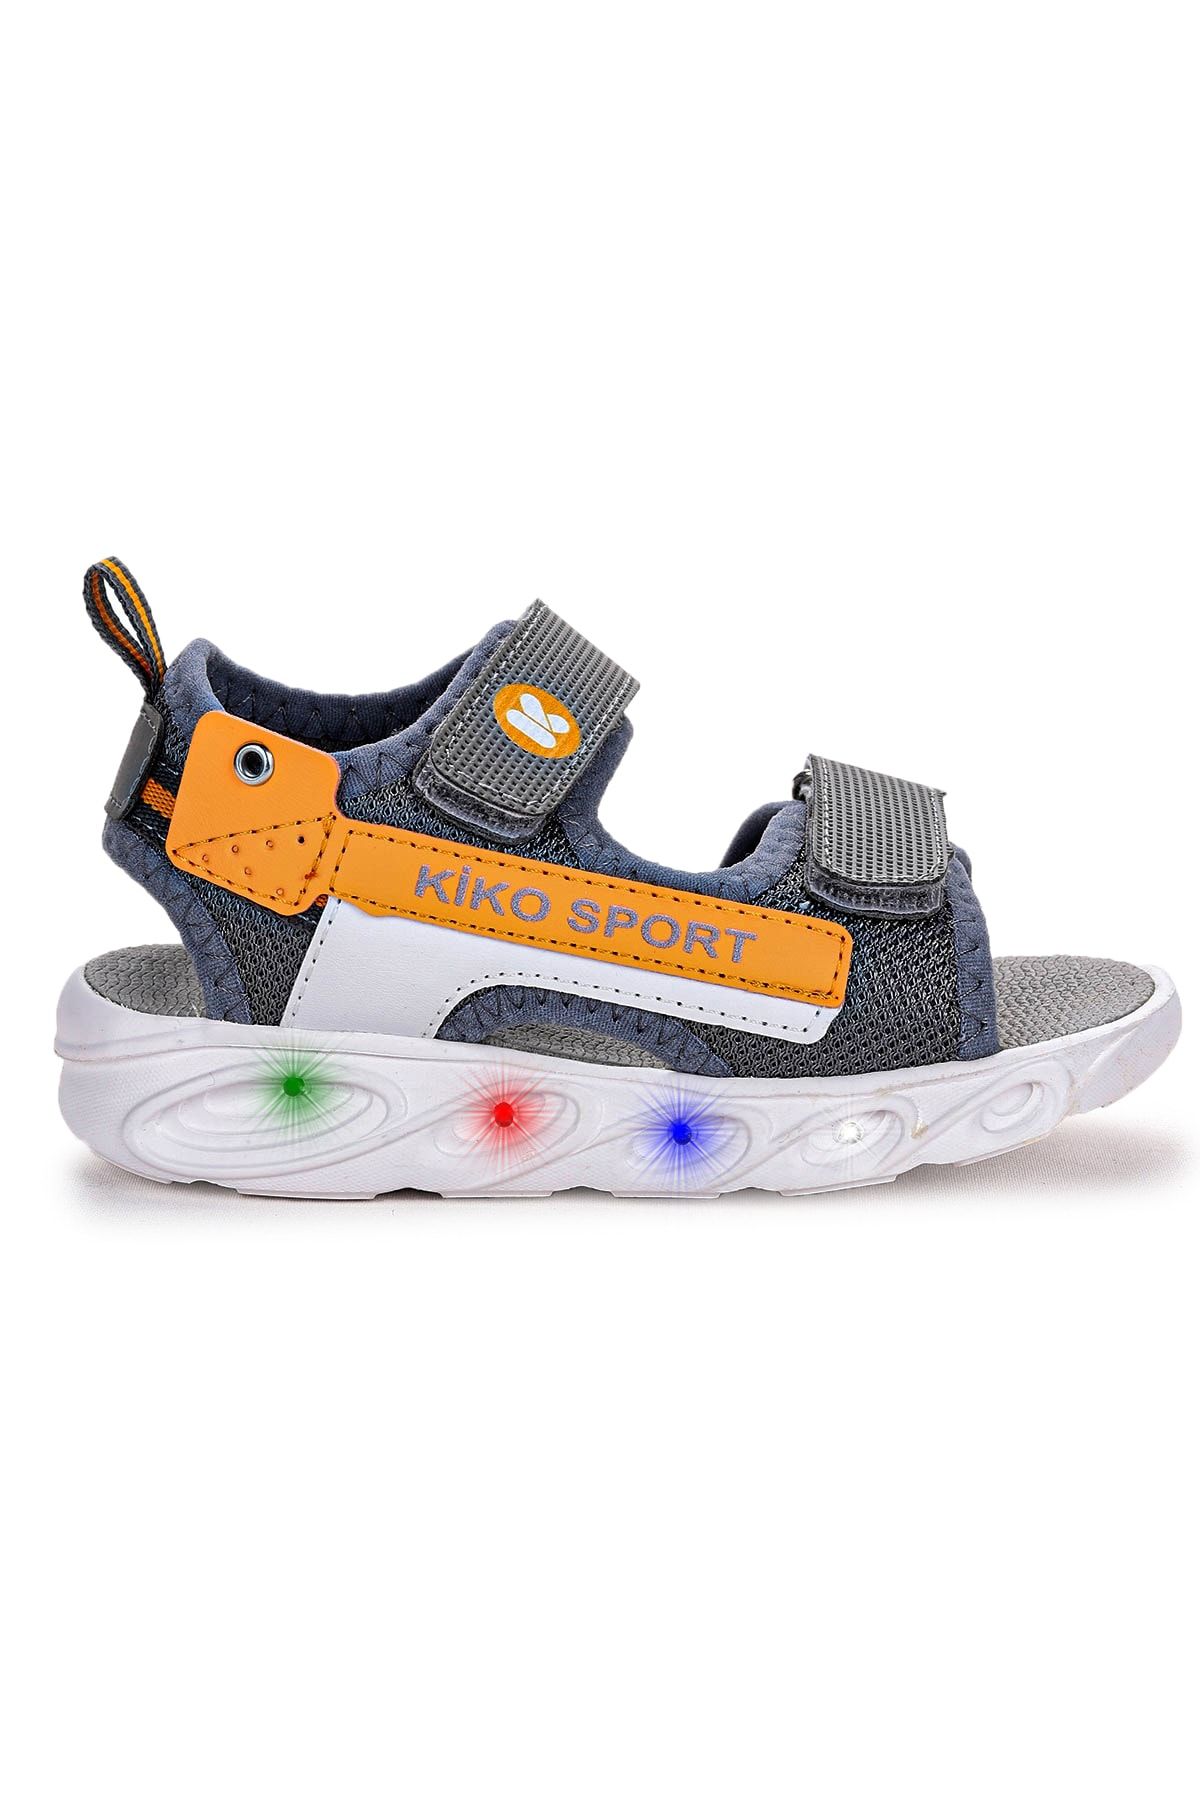 Kiko Kids 101 Işıklı Günlük Kız/erkek Çocuk Cırtlı Sandalet Ayakkabı